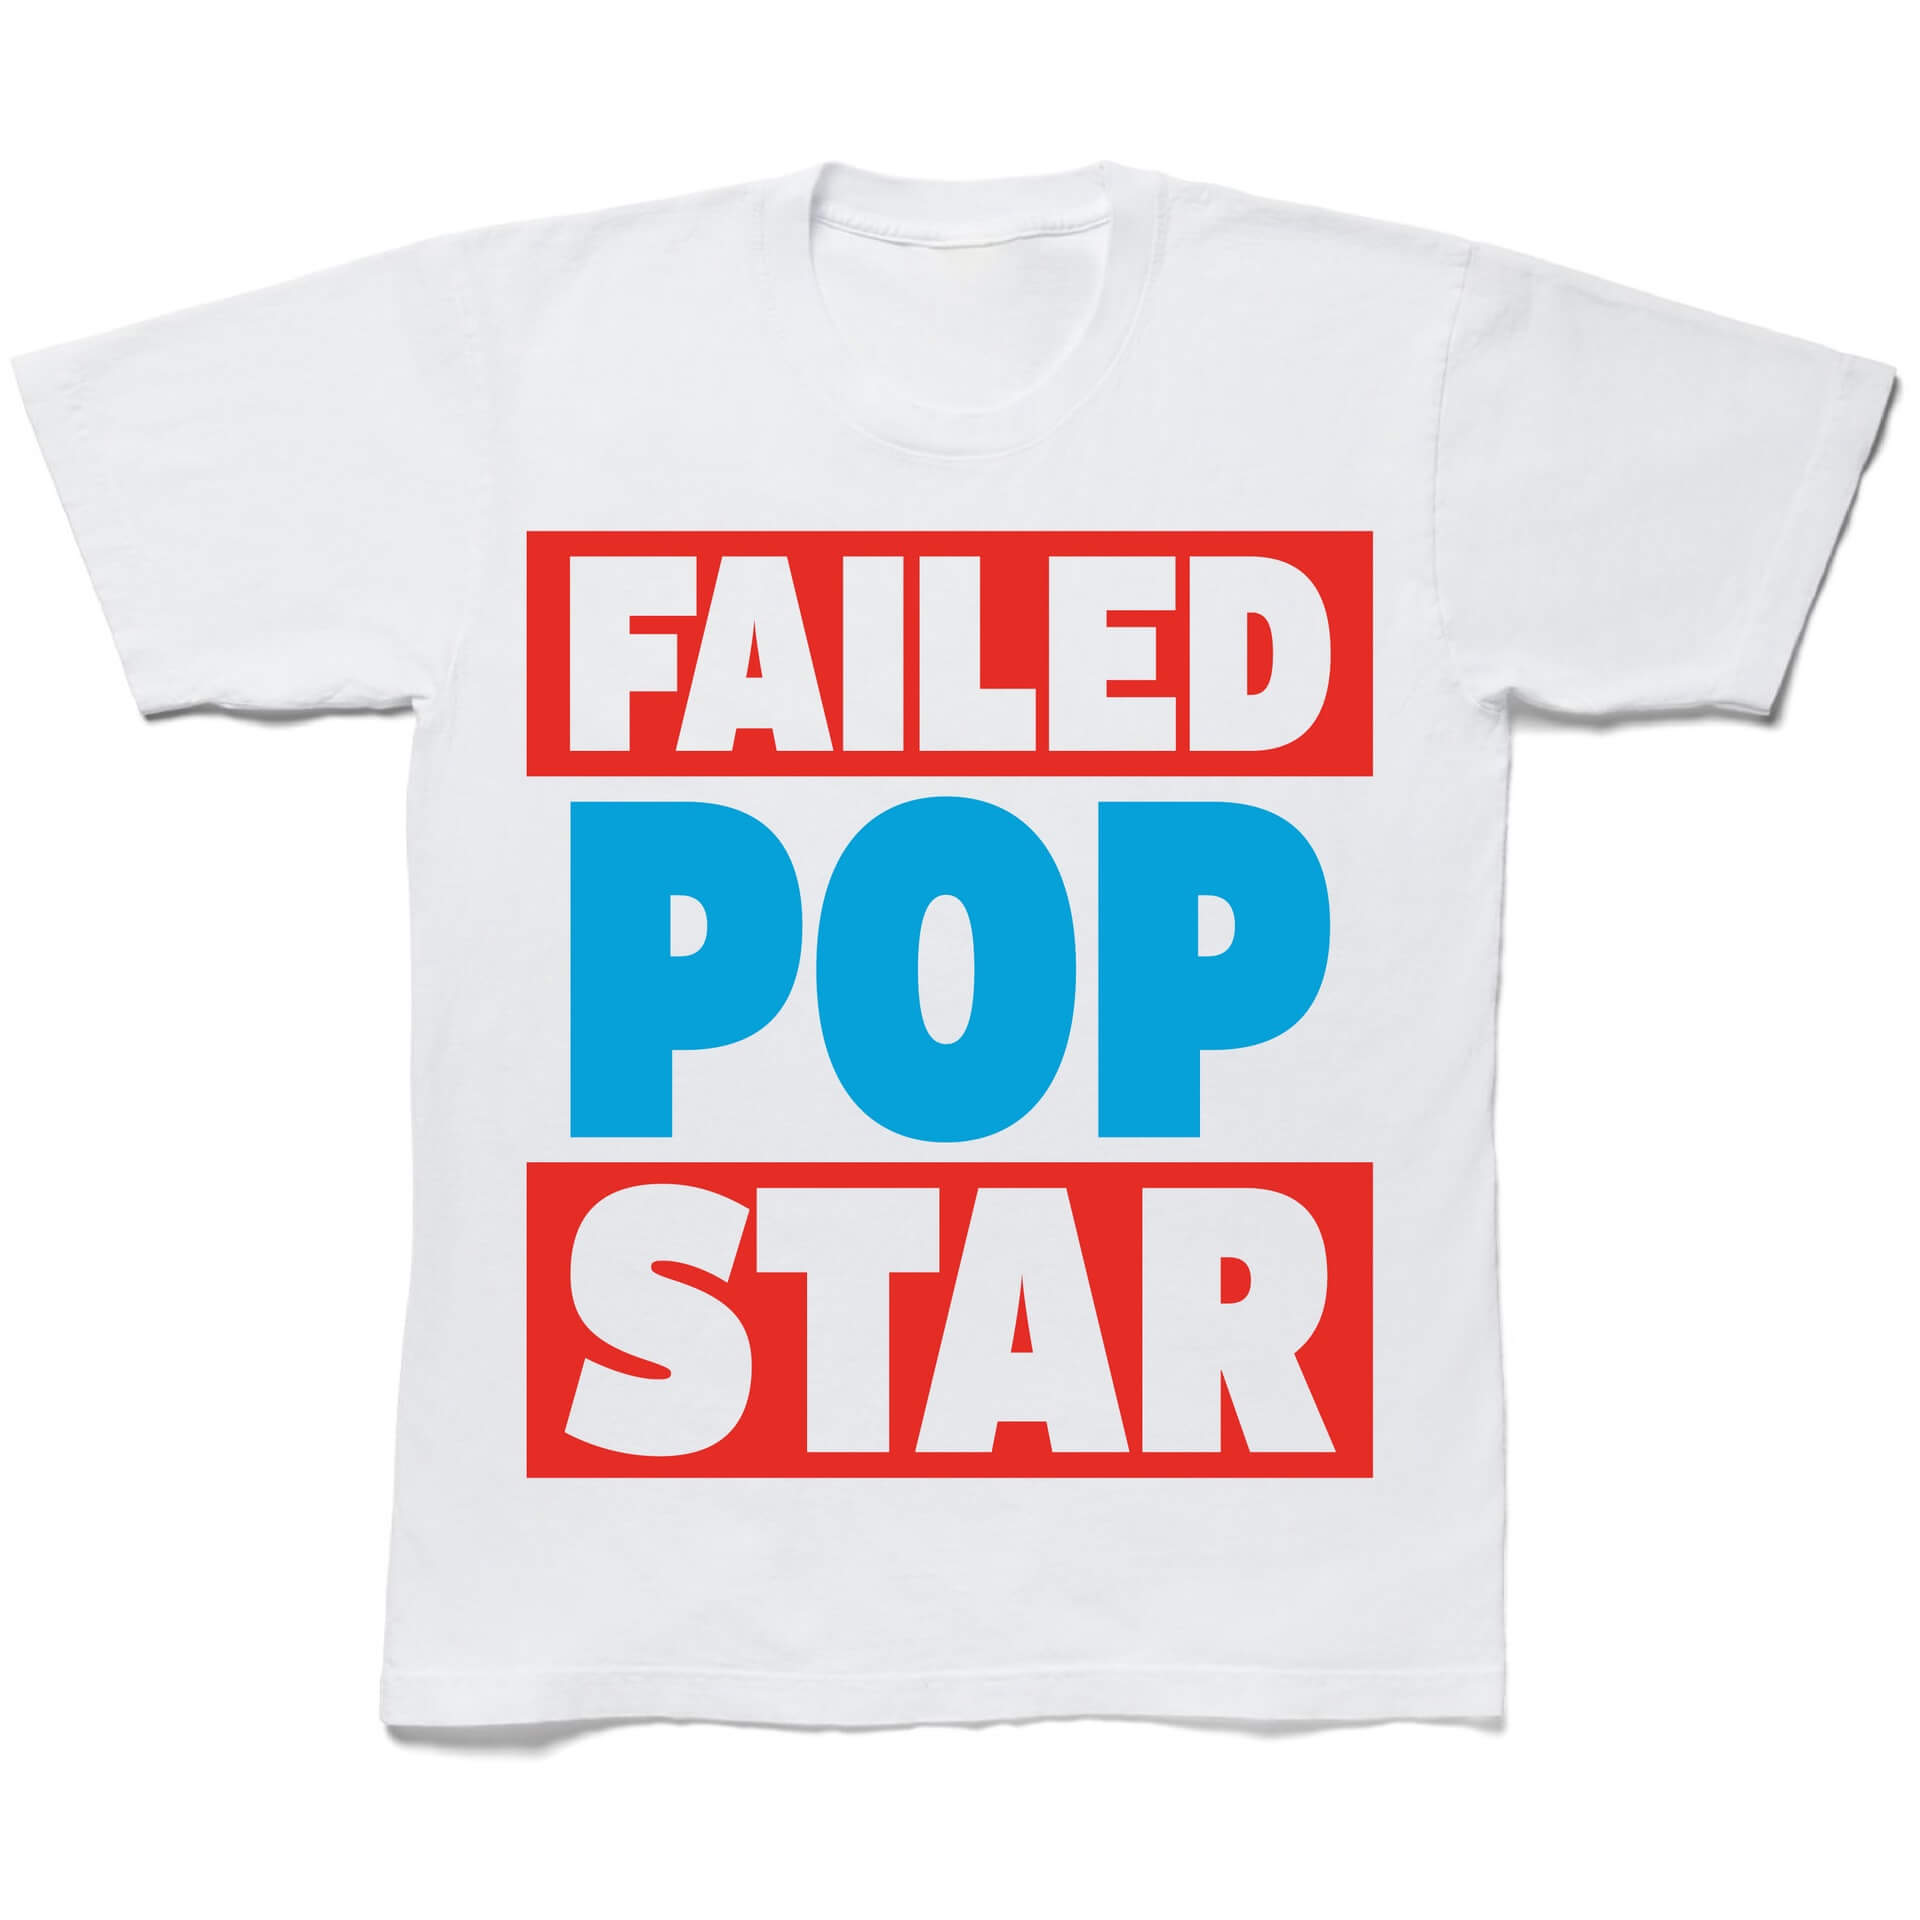 ‘Failed Popstar tee’ cover art